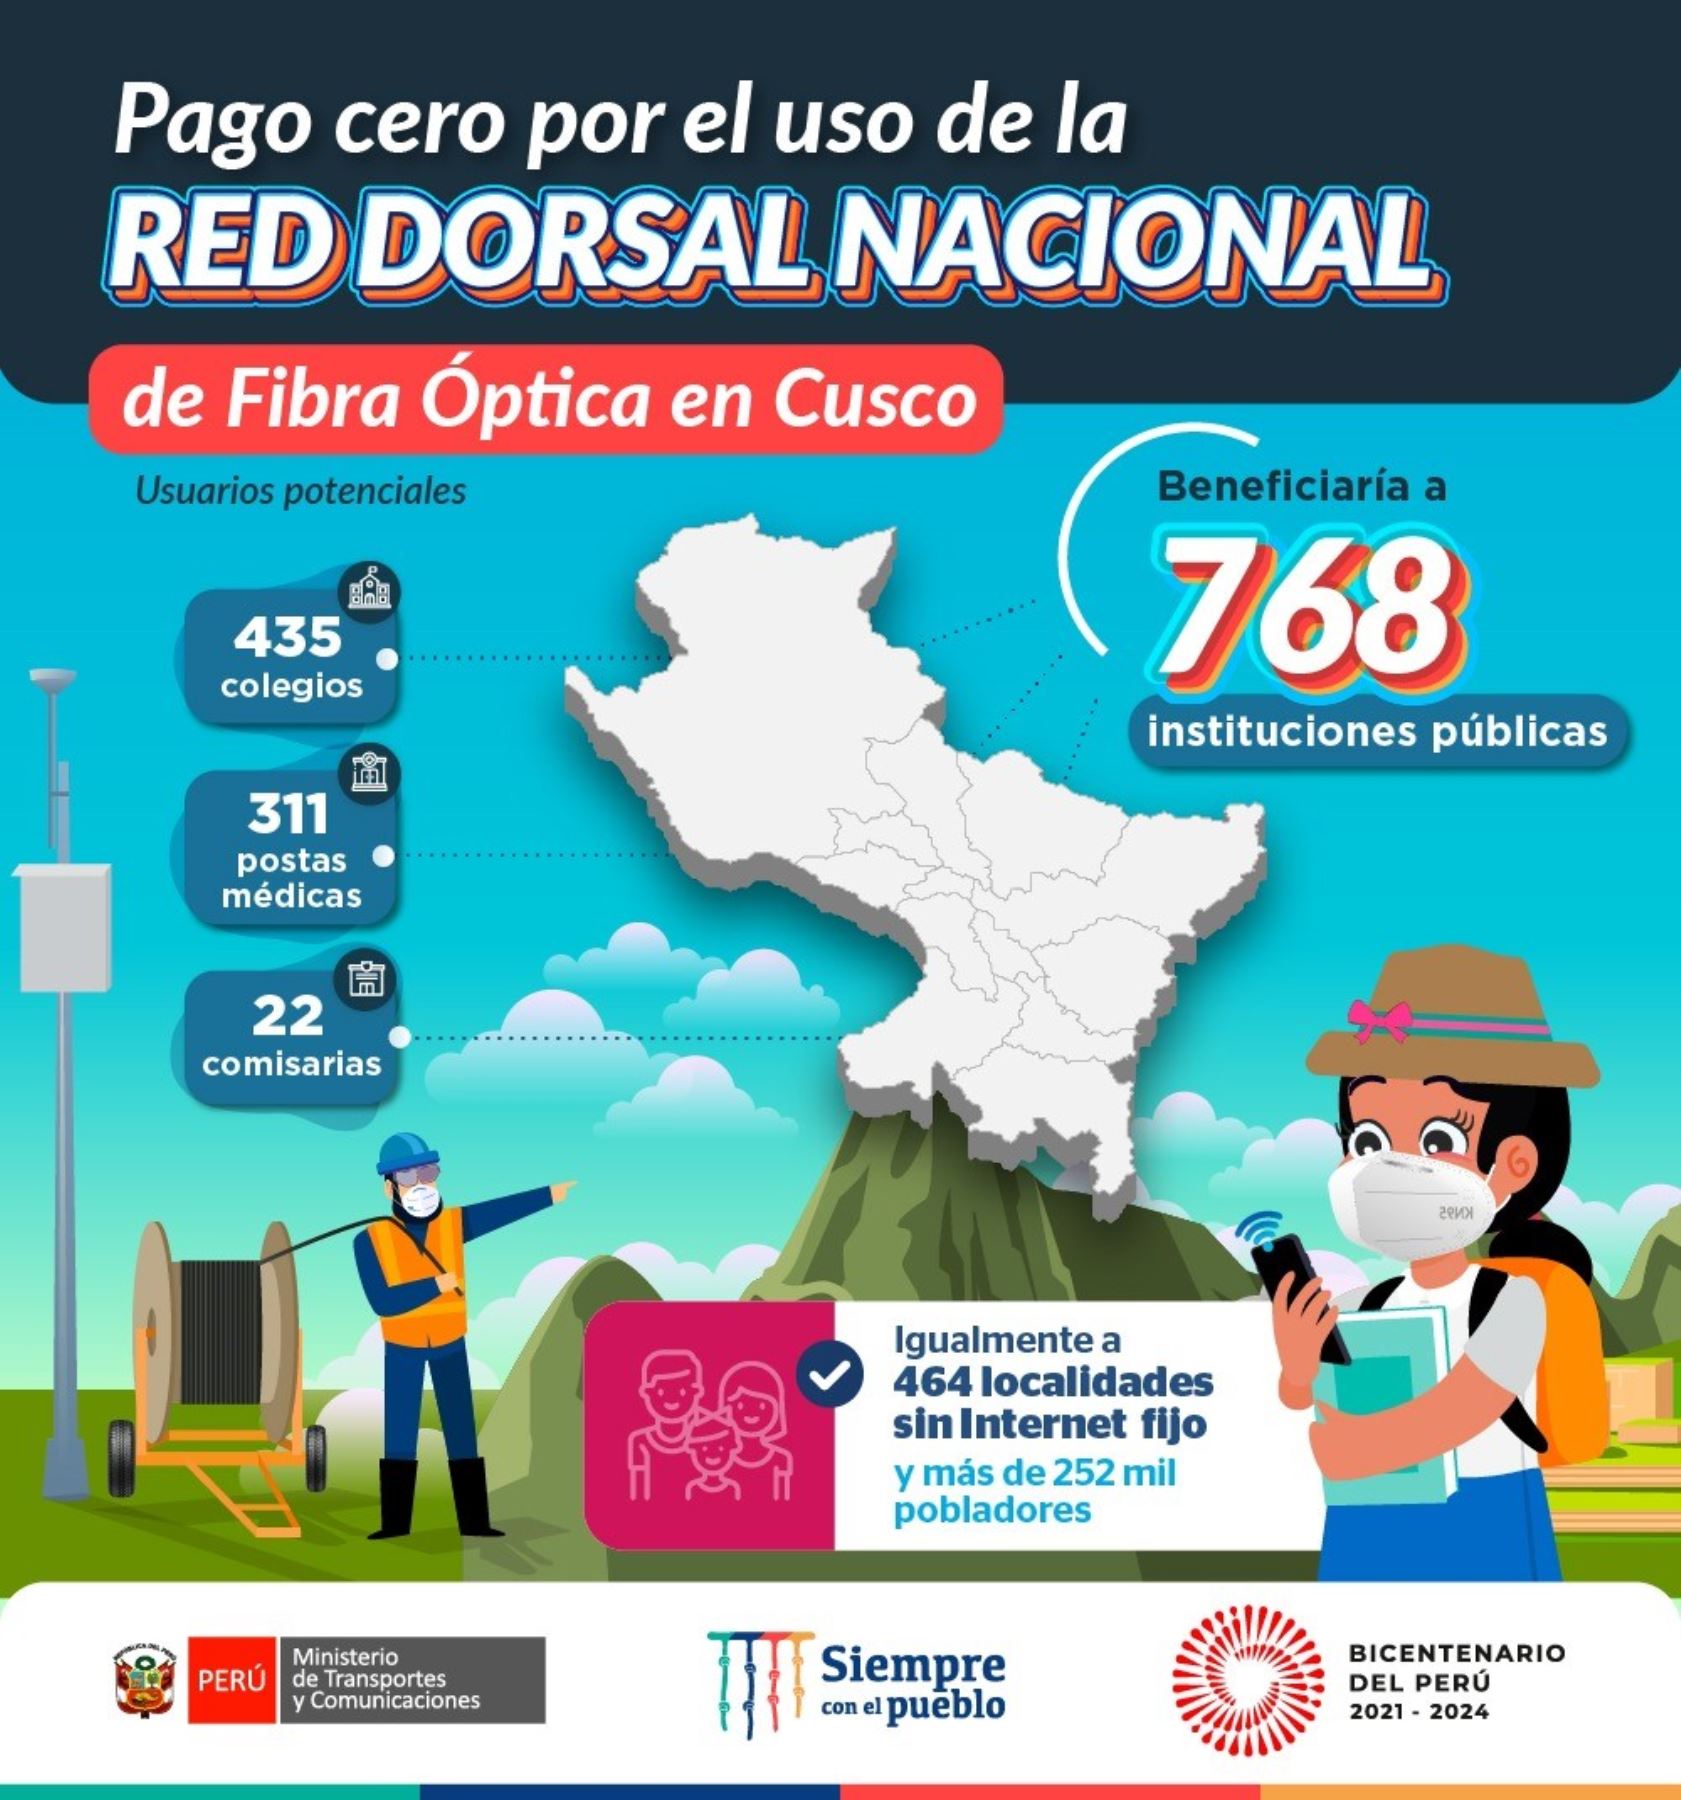 Más de 700 instituciones públicas del Cusco podrán acceder al internet con pago cero.